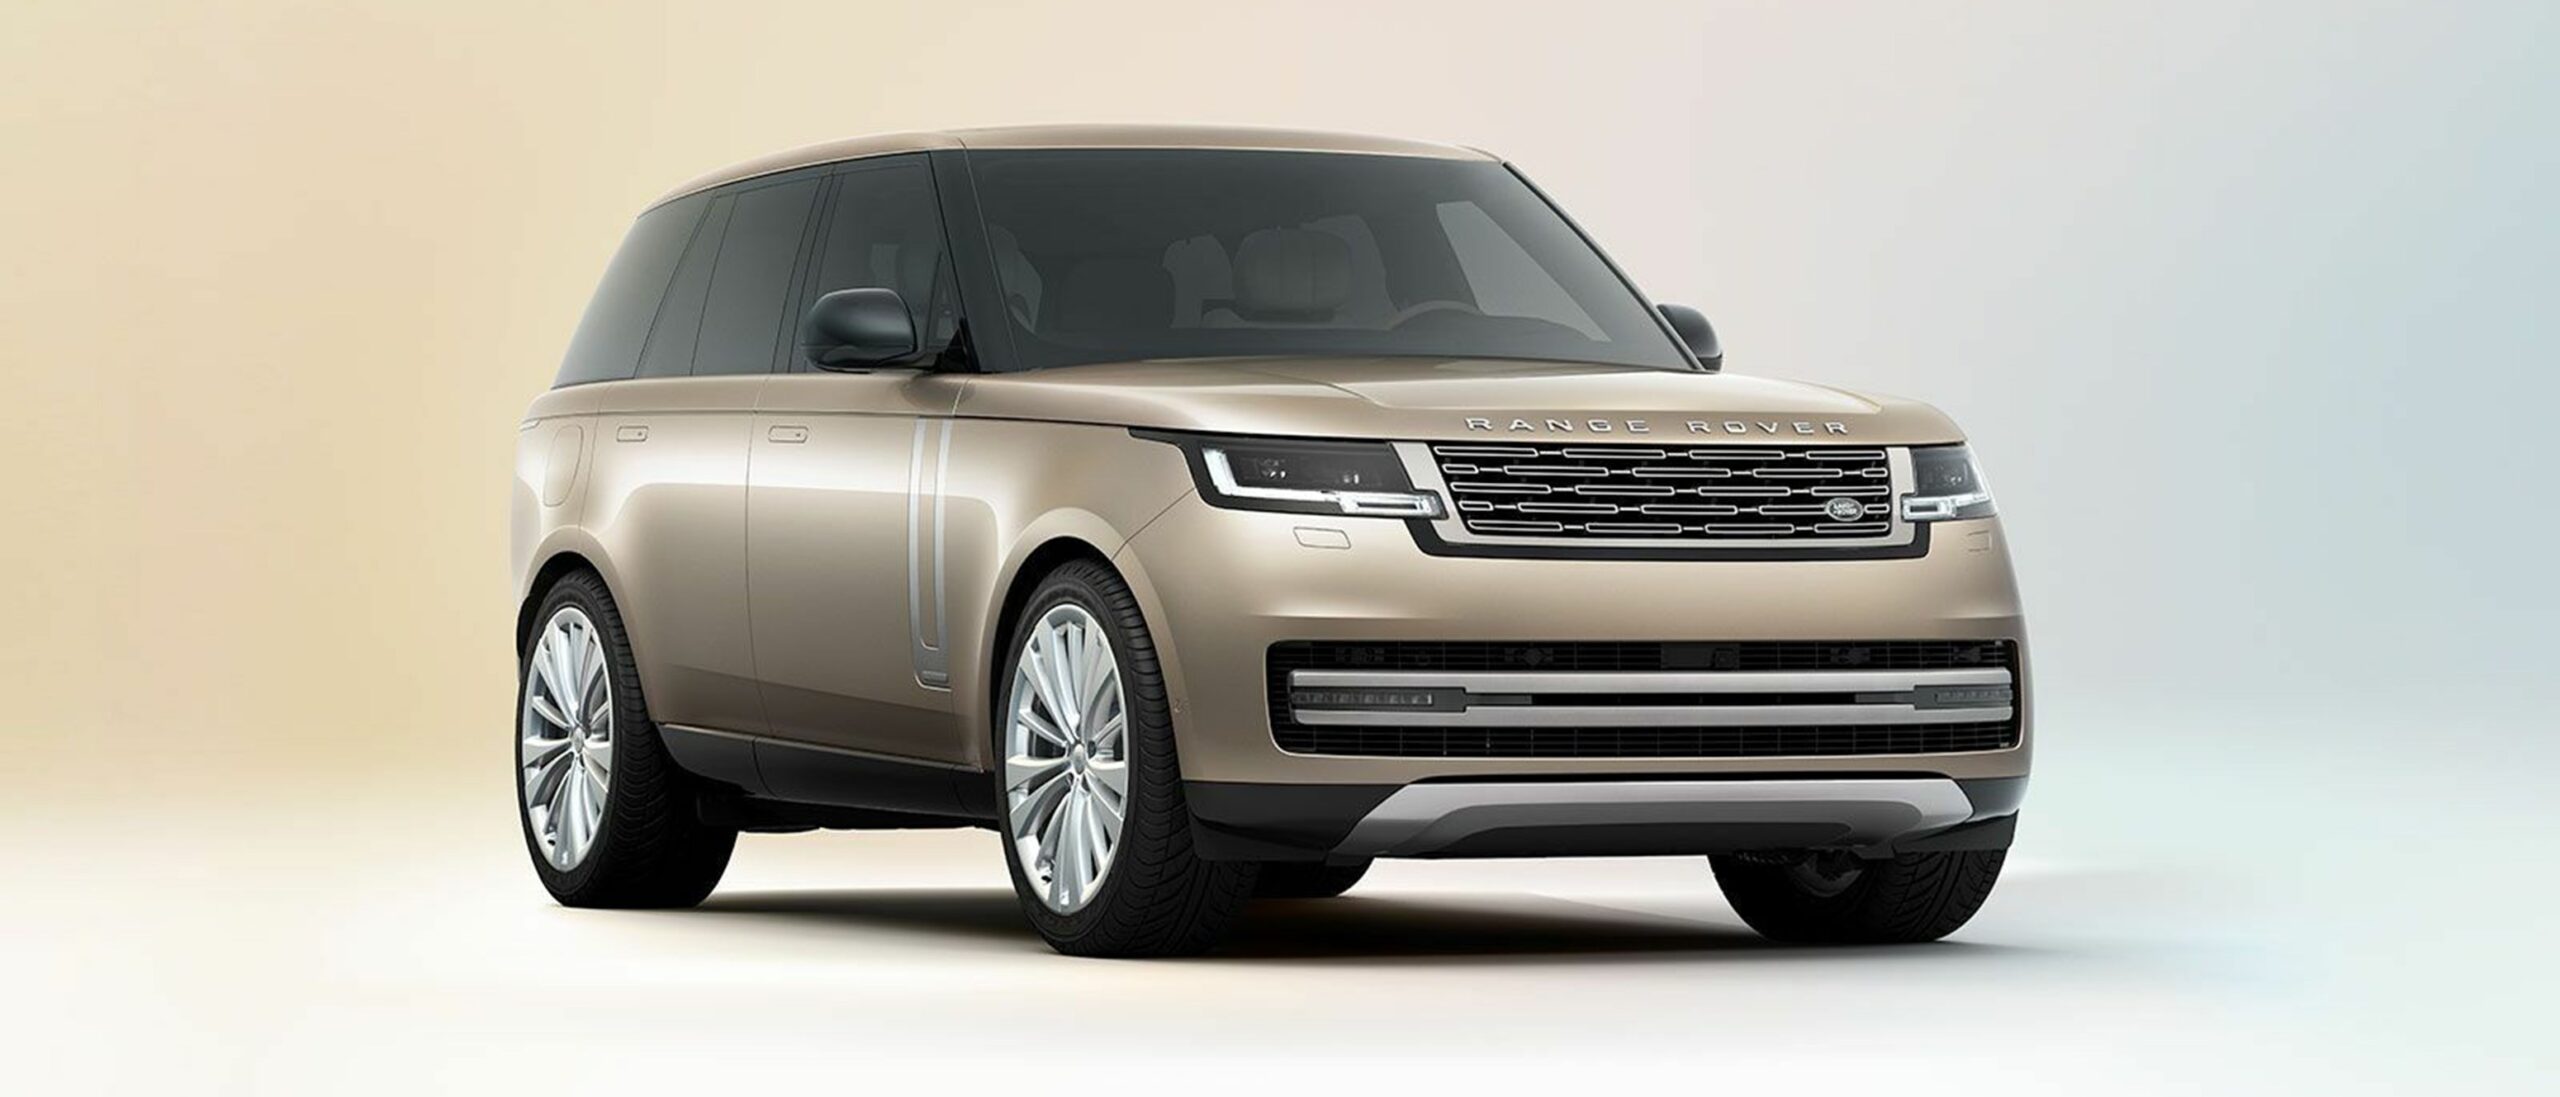 Range Rover: Luxus cruiseship på landevejen